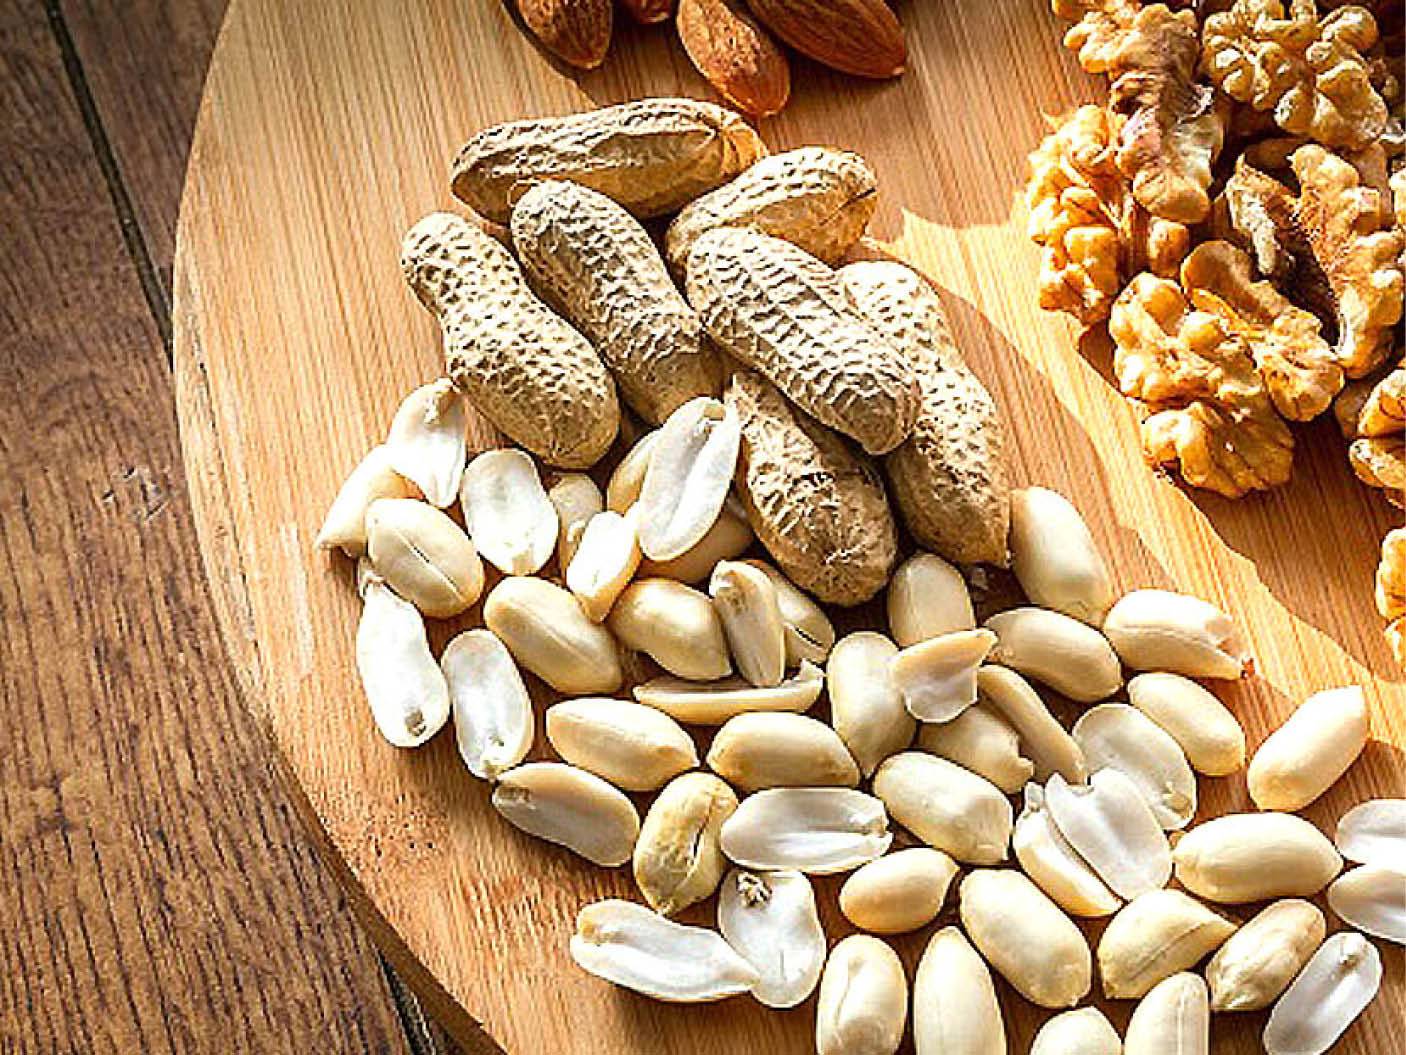 Лучшие орехи для похудения и сколько их можно есть